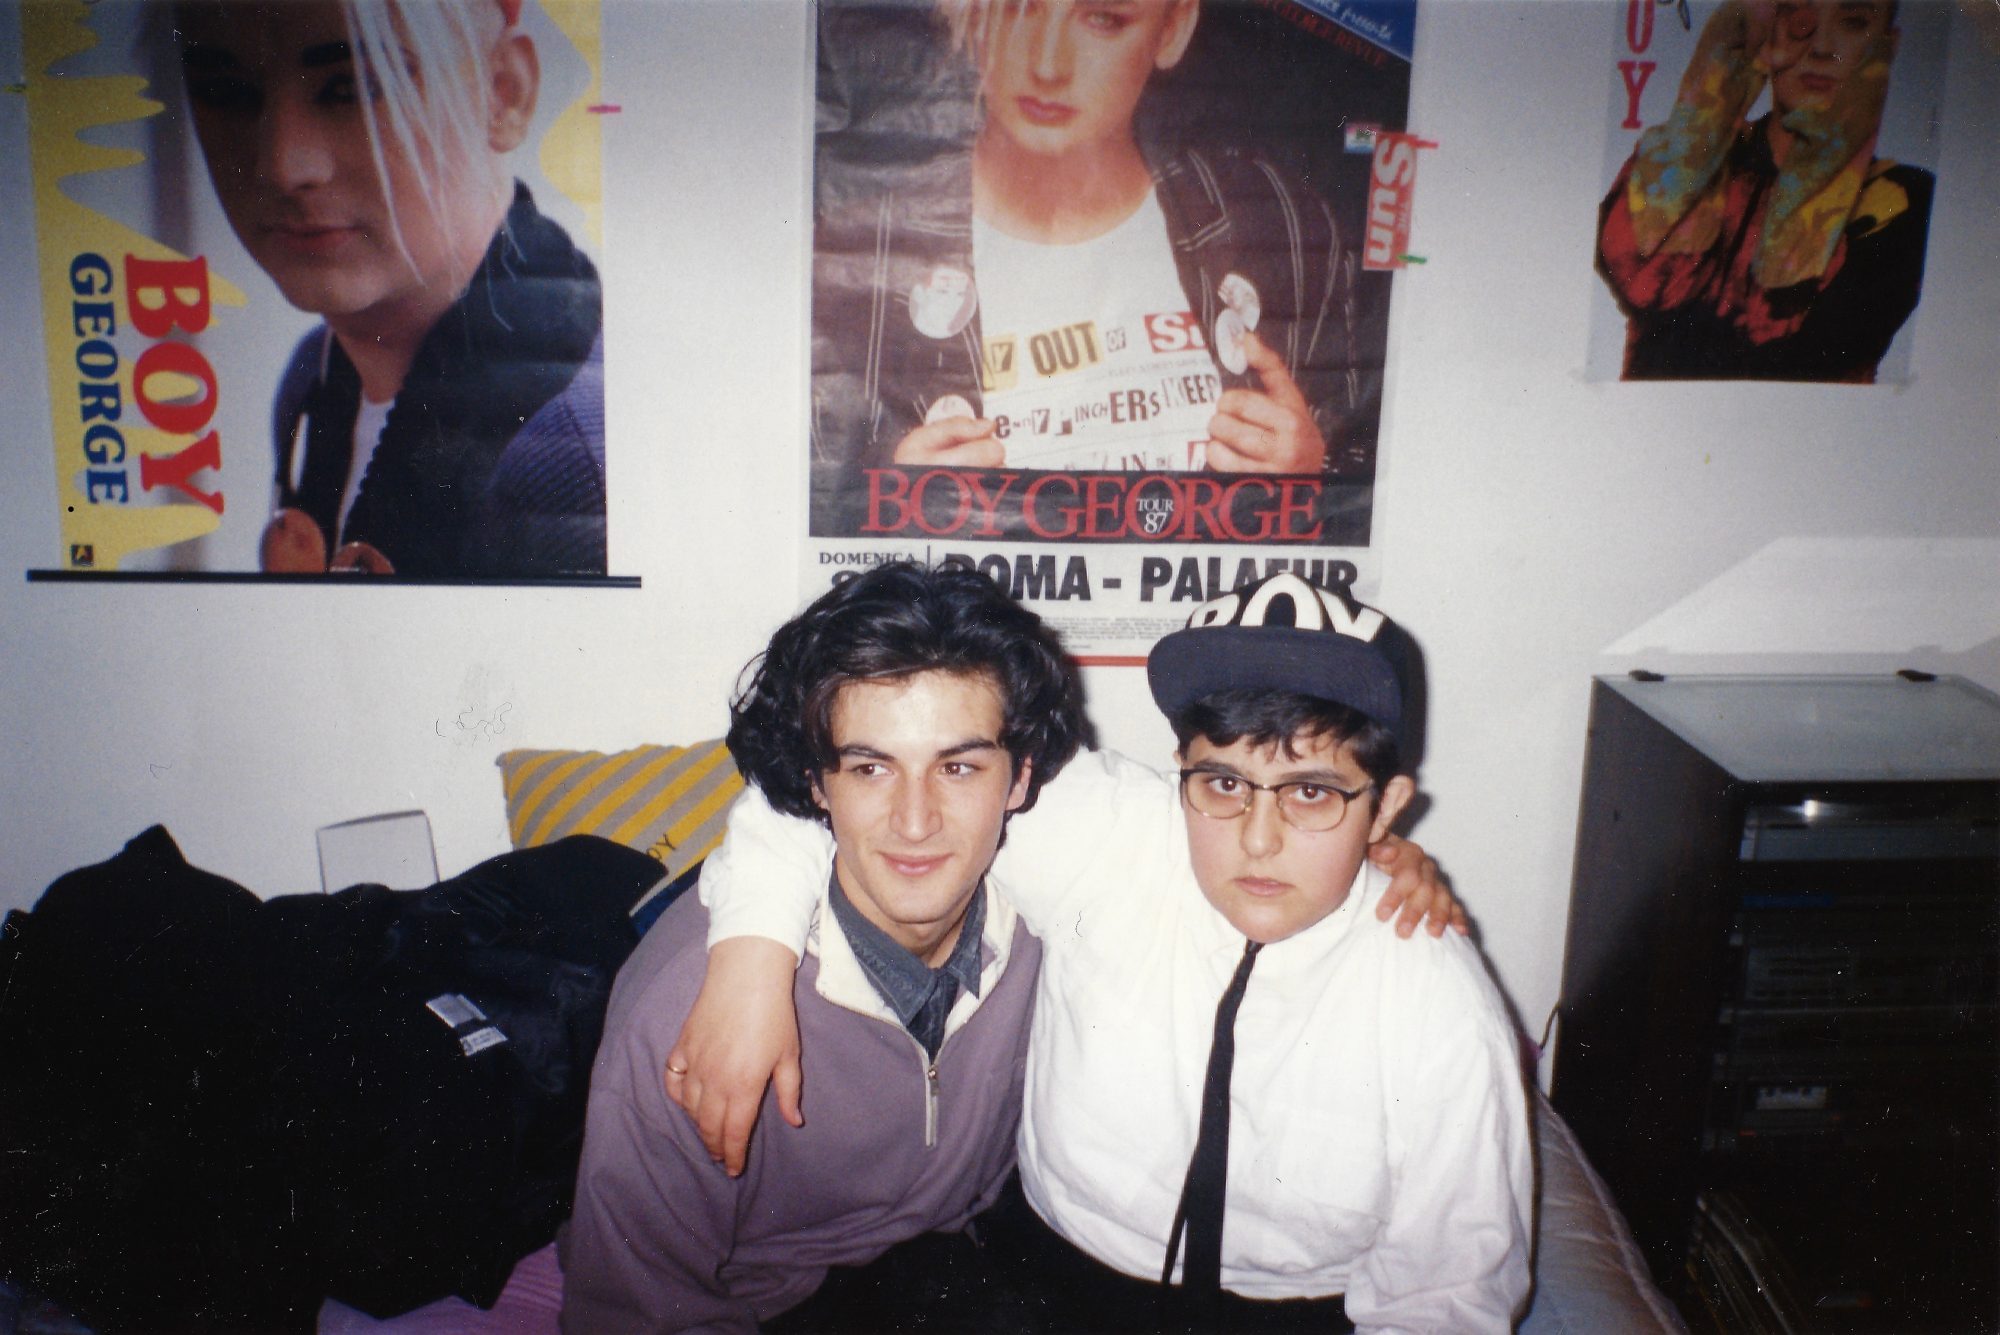 Ausstellungsfoto (Ale am 18. Geburtstag mit bester Freundin und Boy George-Postern im Hintergrund, 1988), Foto: Privat